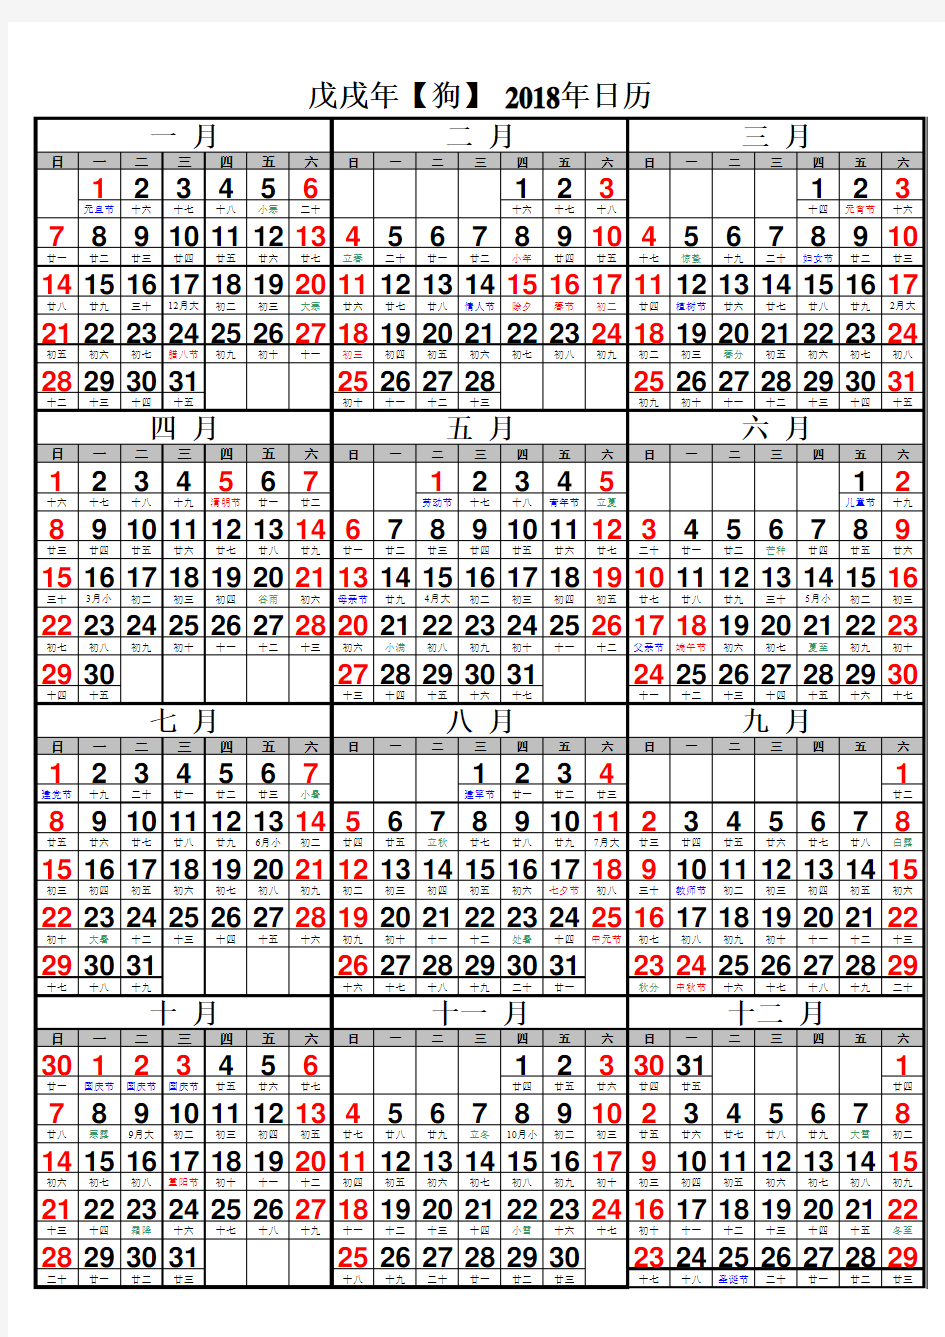 2018年日历表(含农历)打印版(Excel 2010)